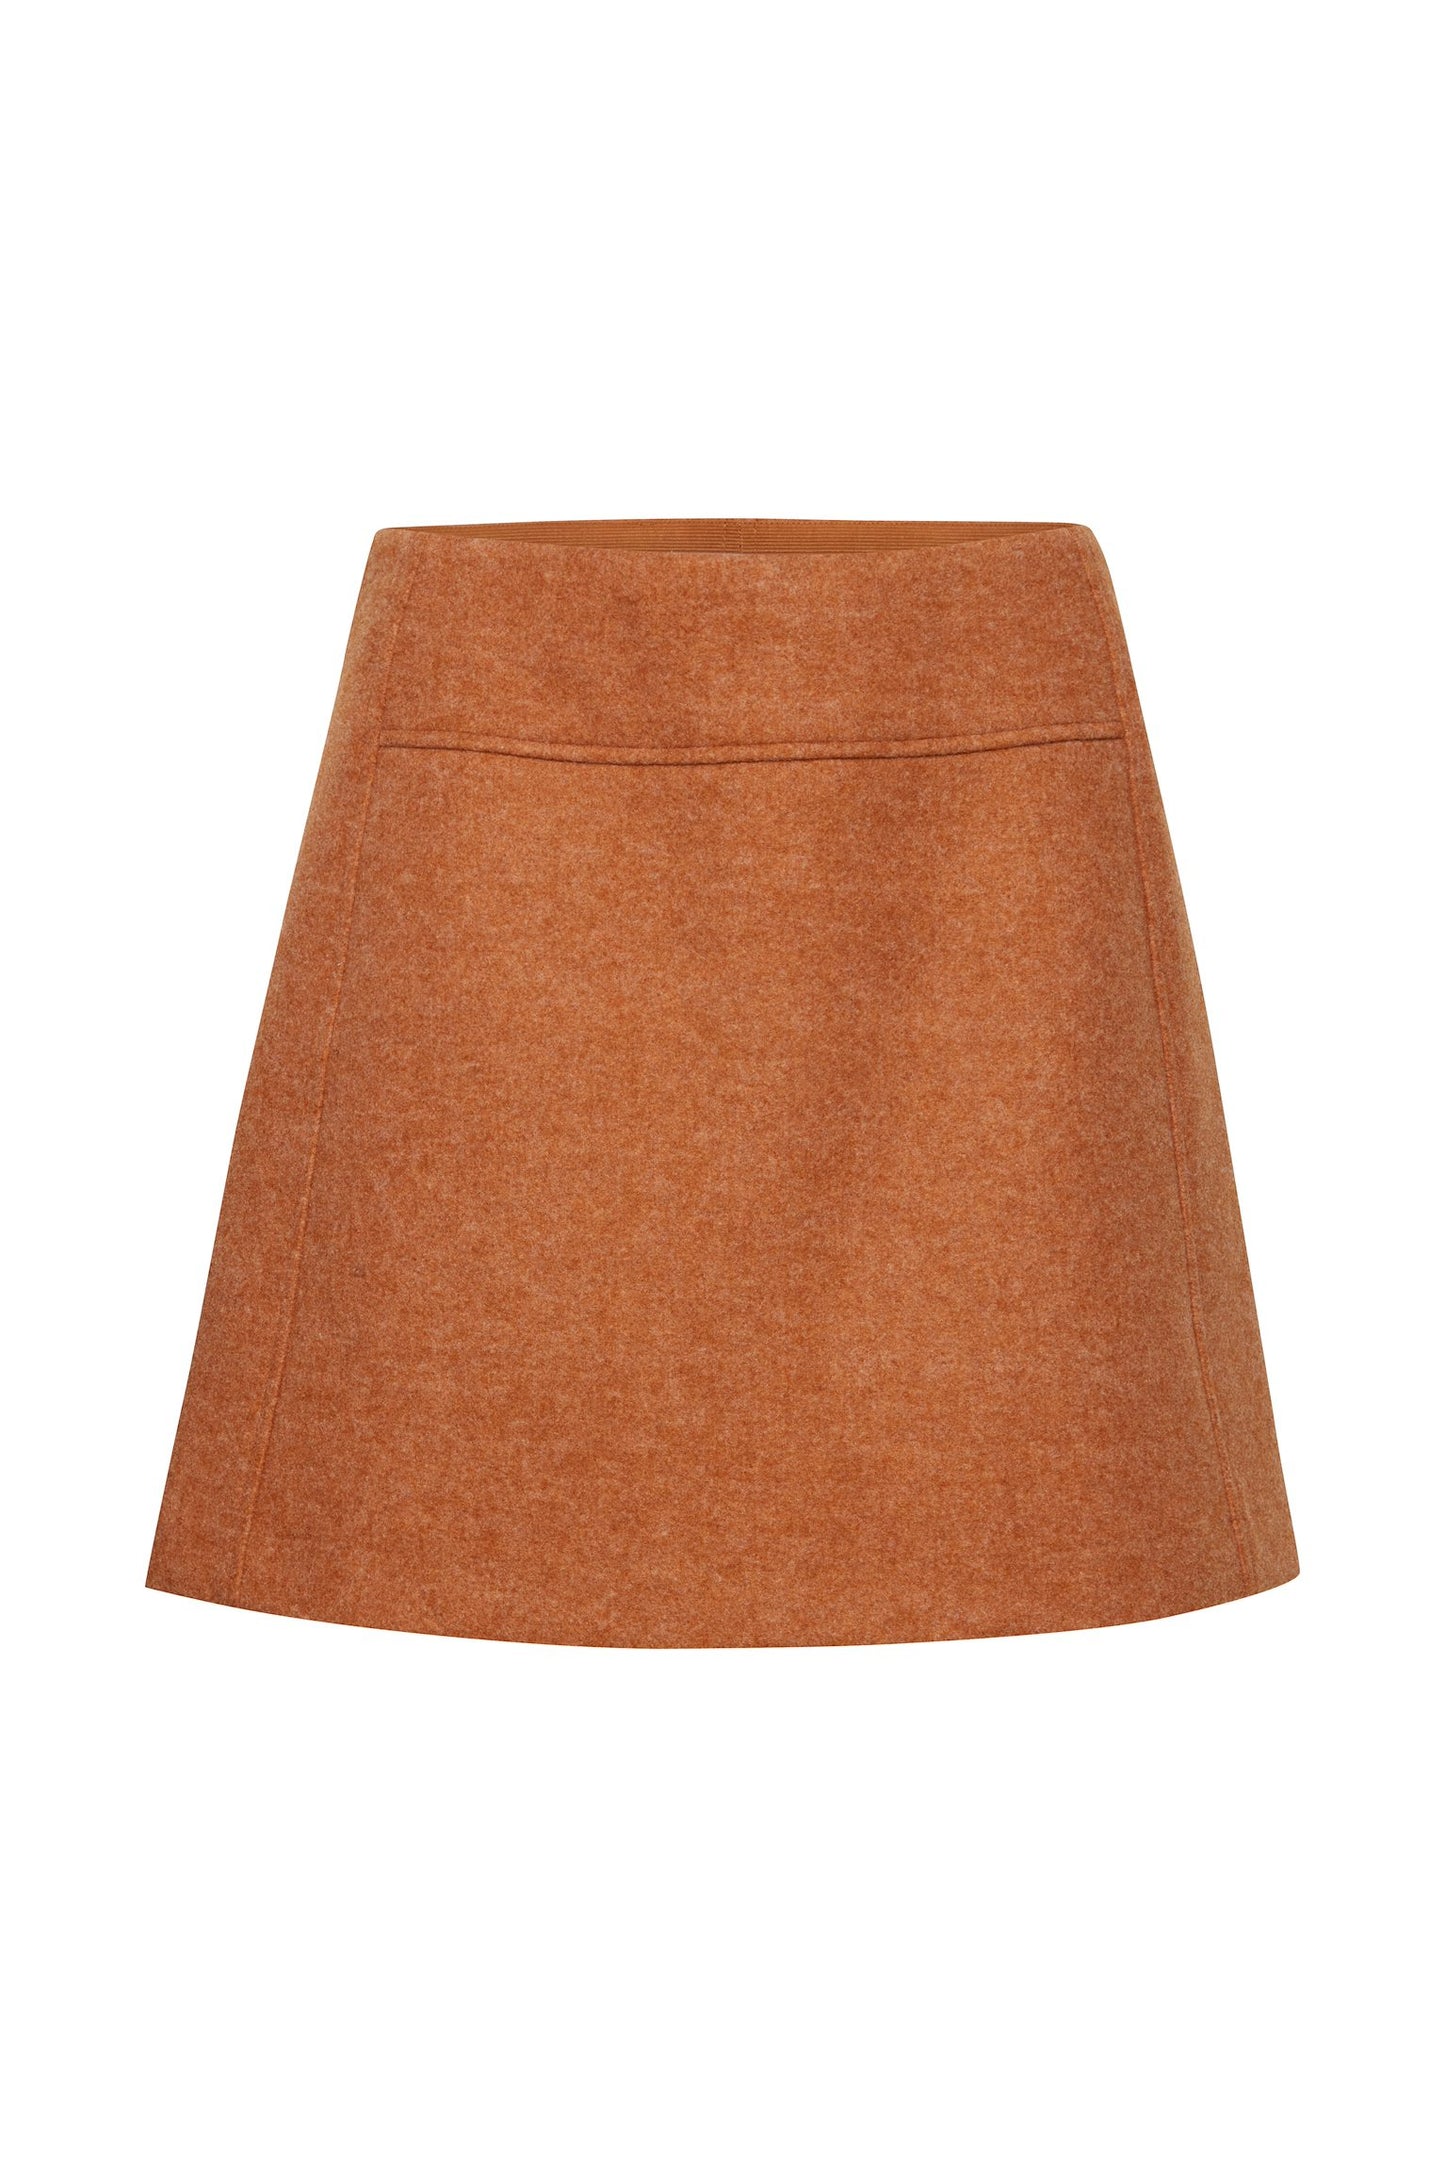 A-Line Mini Skirt (almond melange)